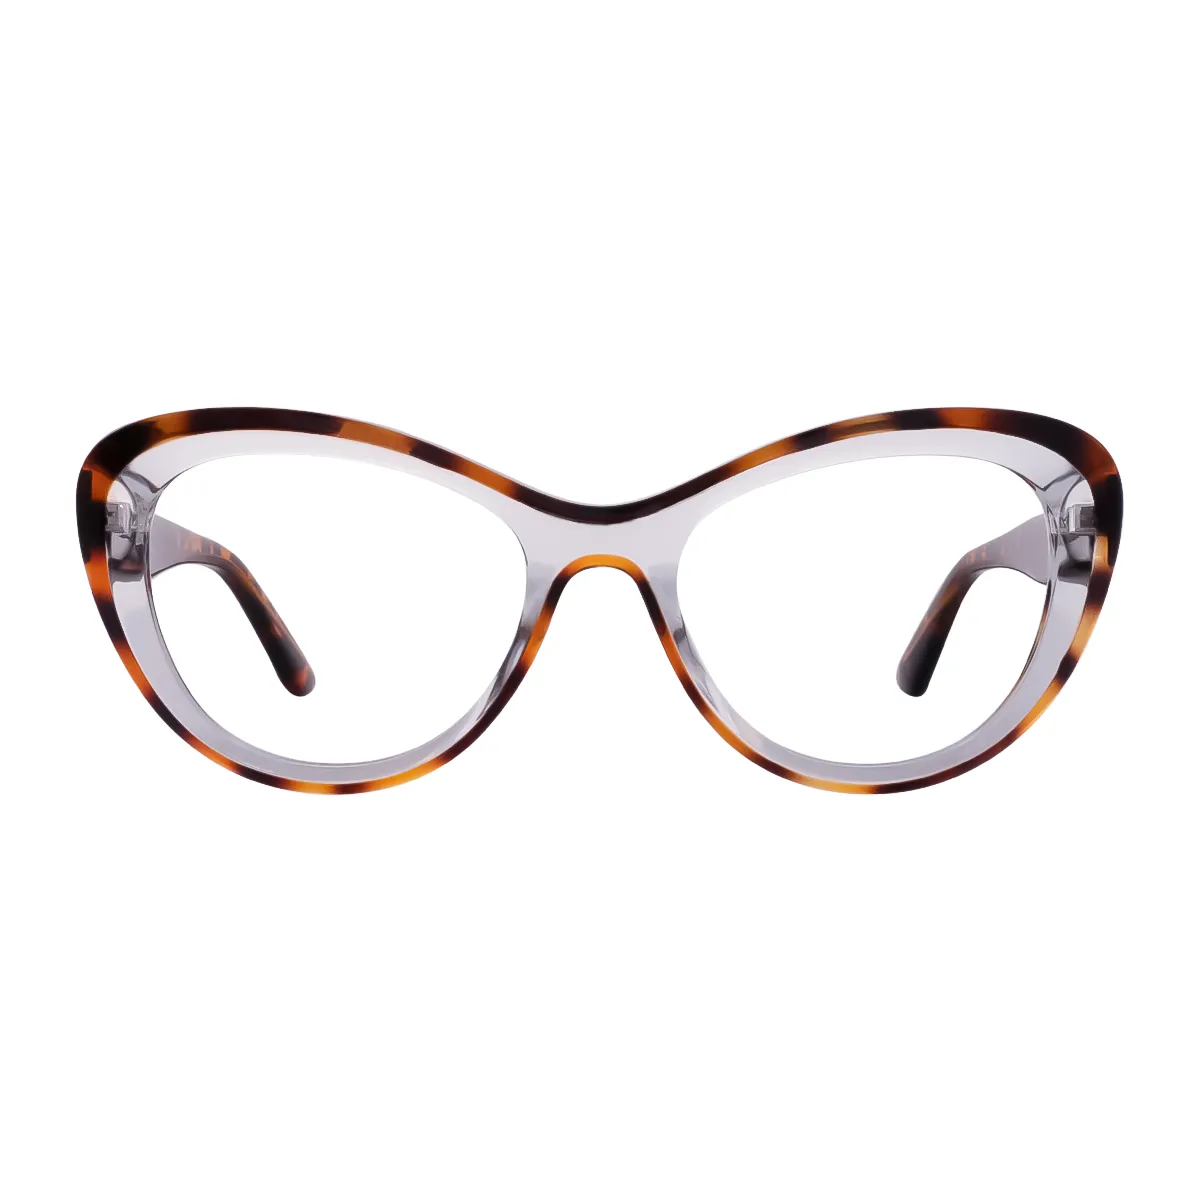 Lamont - Cat-Eye Tortoisehell Glasses for Women